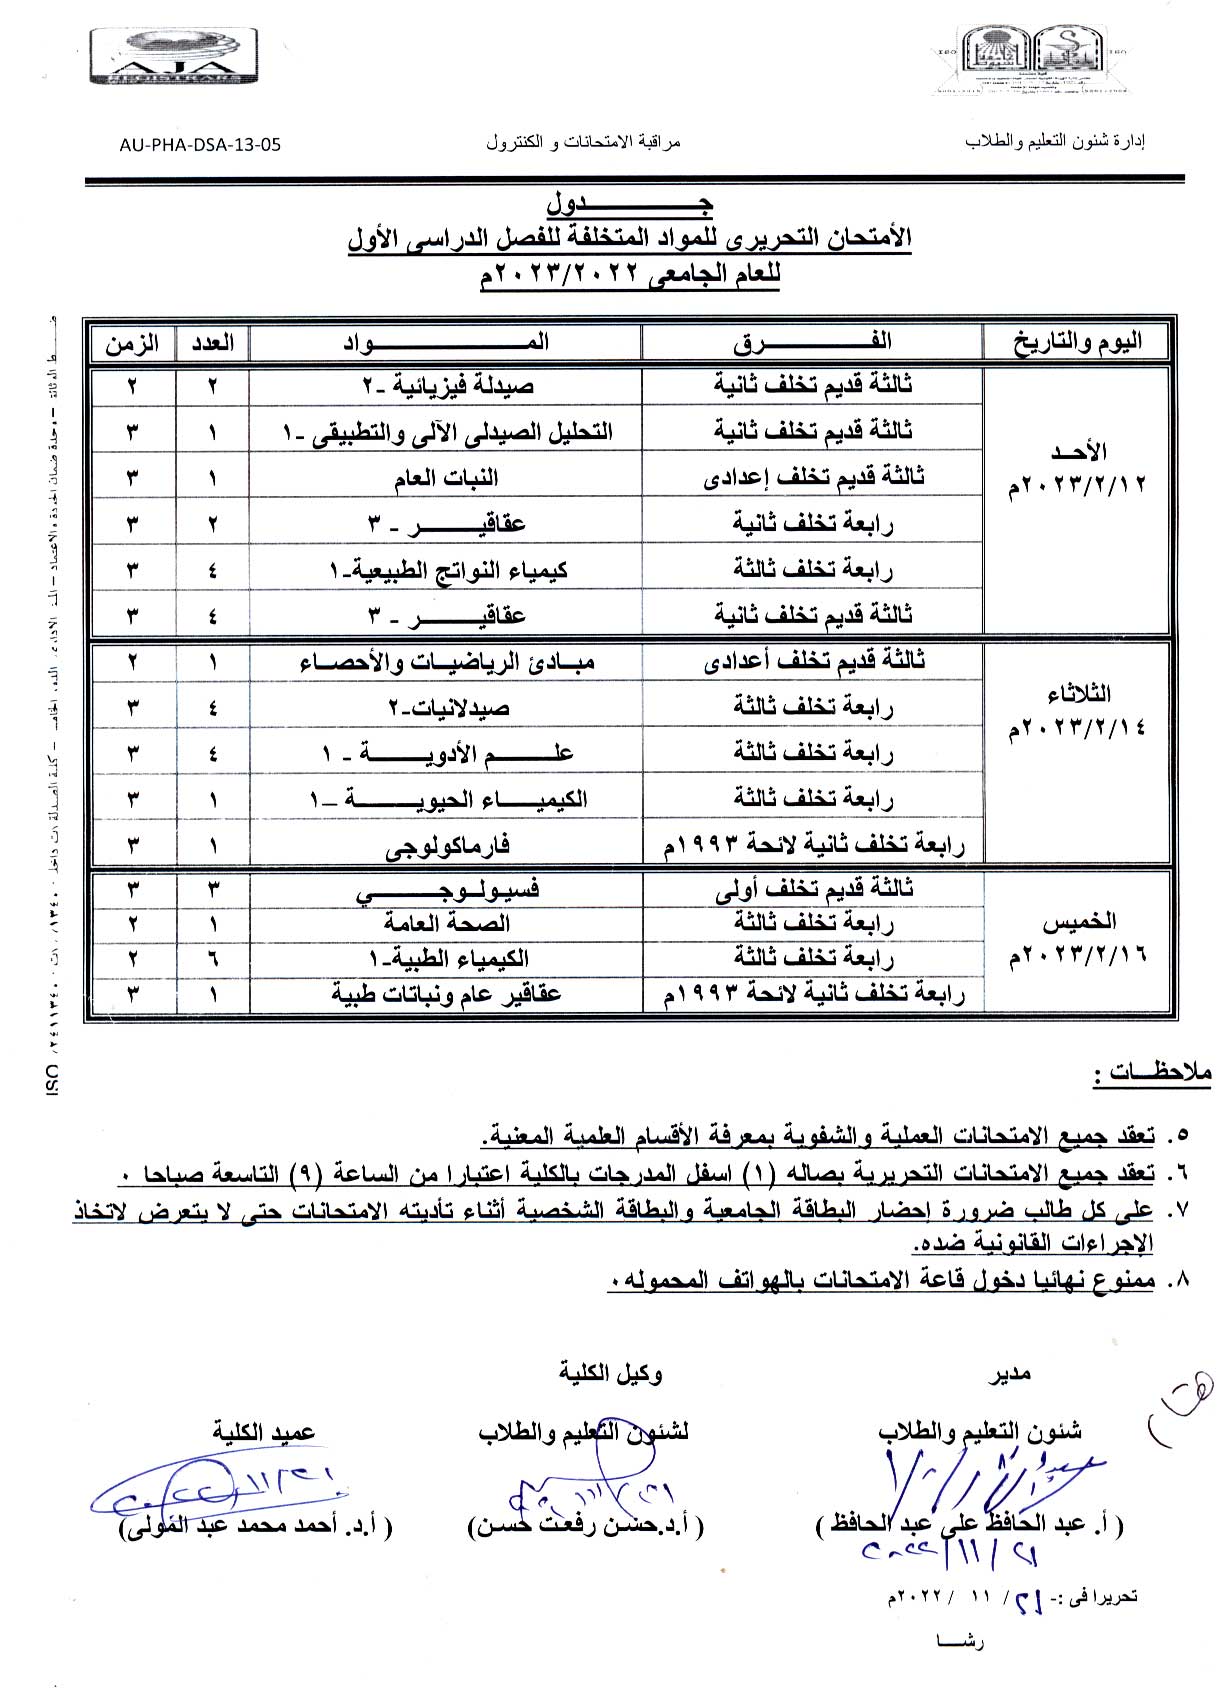 جدول الأمتحان التحريري للمواد المتخلفة للفصل الدراسي الأول للعام الجامعى 2022/2023 م